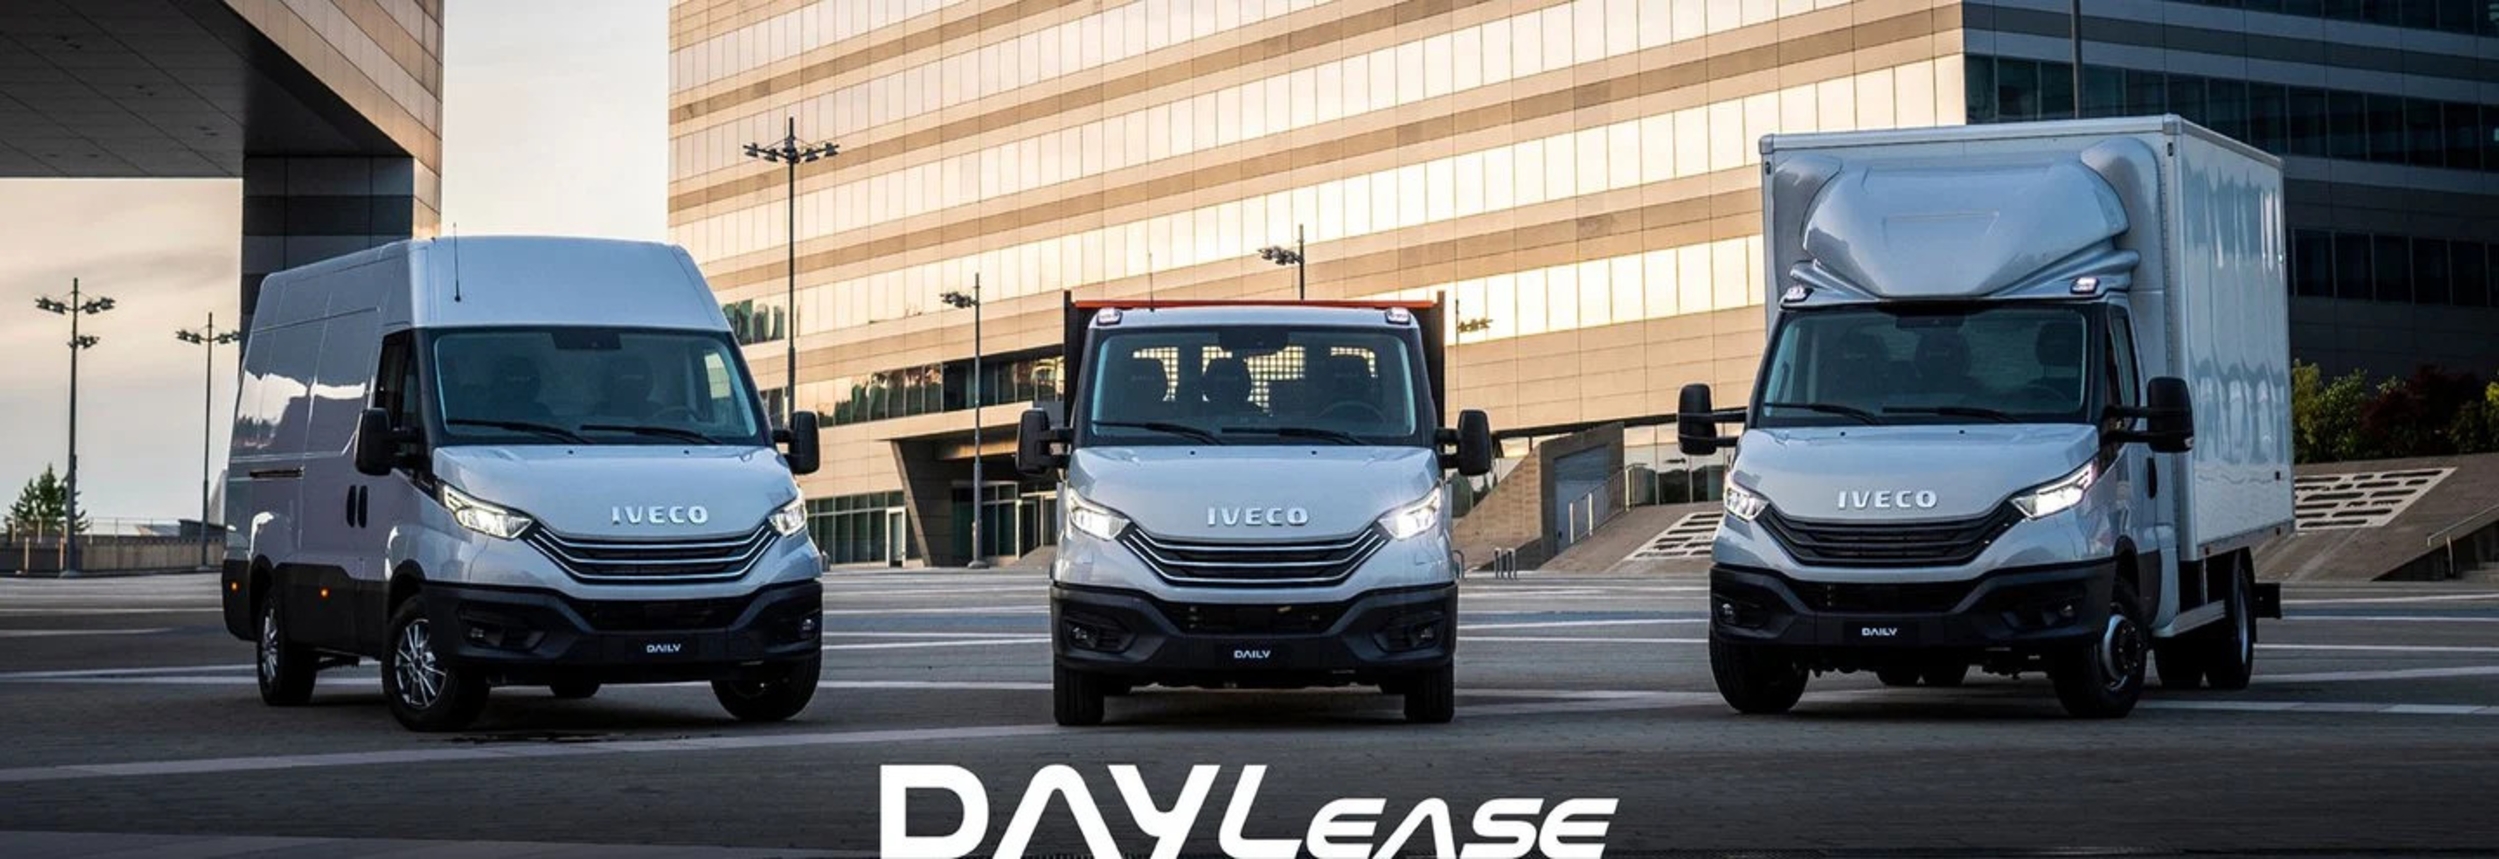 Promozione DAYLEASE il leasing integrato e completo per il tuo DAILY - Lombardia Truck